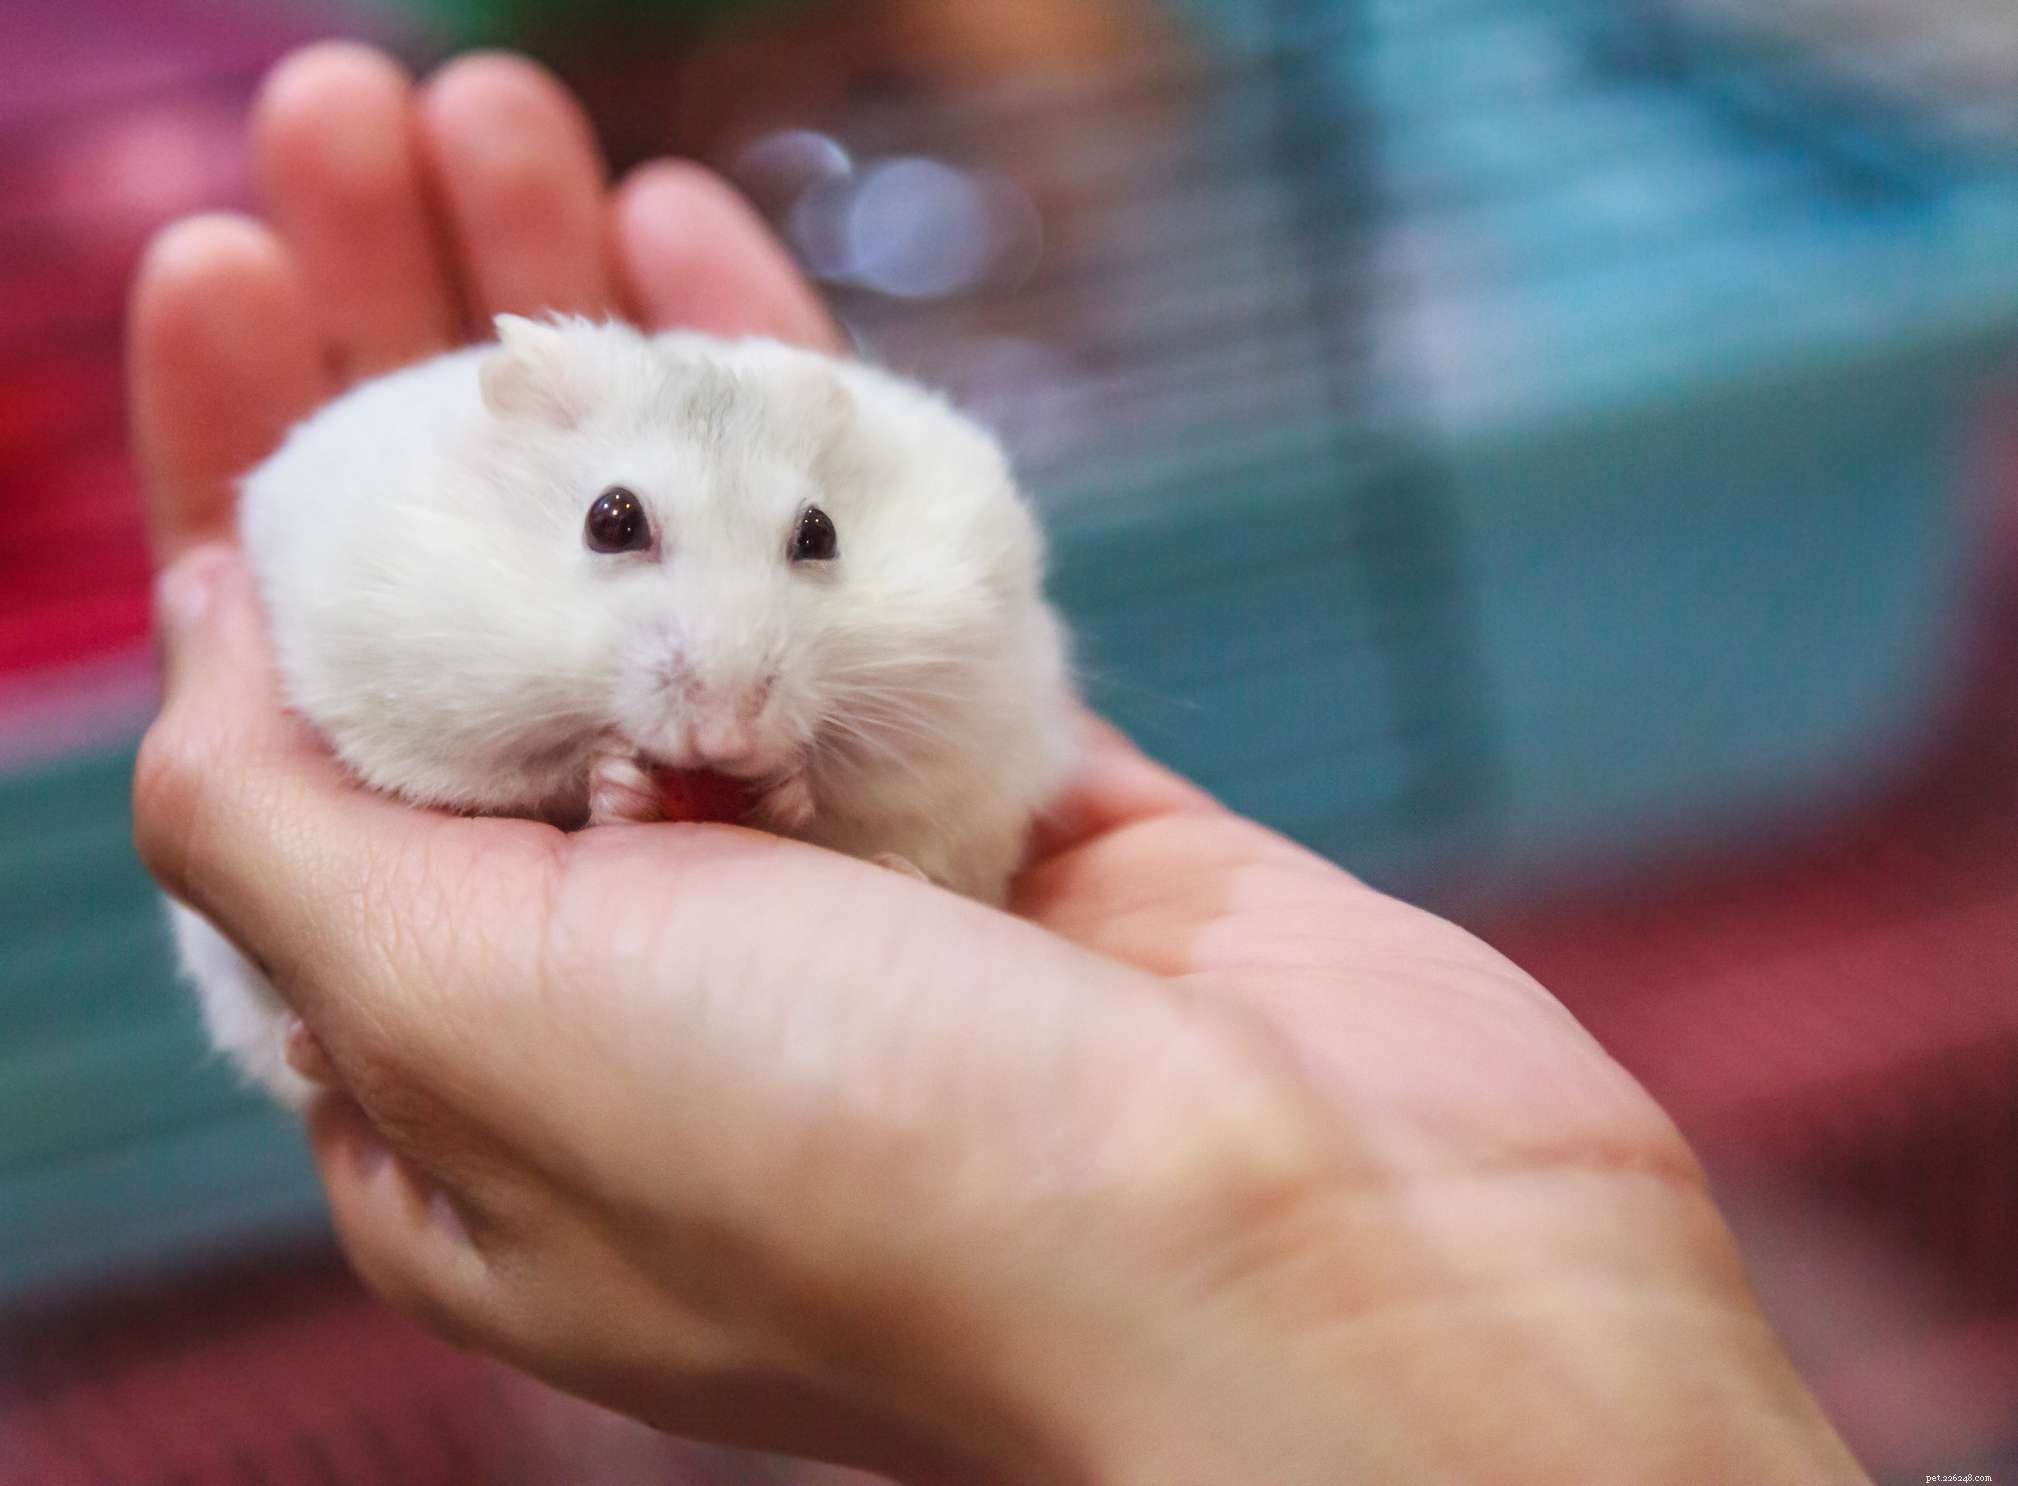 Les 5 espèces de hamster les plus populaires gardées comme animaux de compagnie